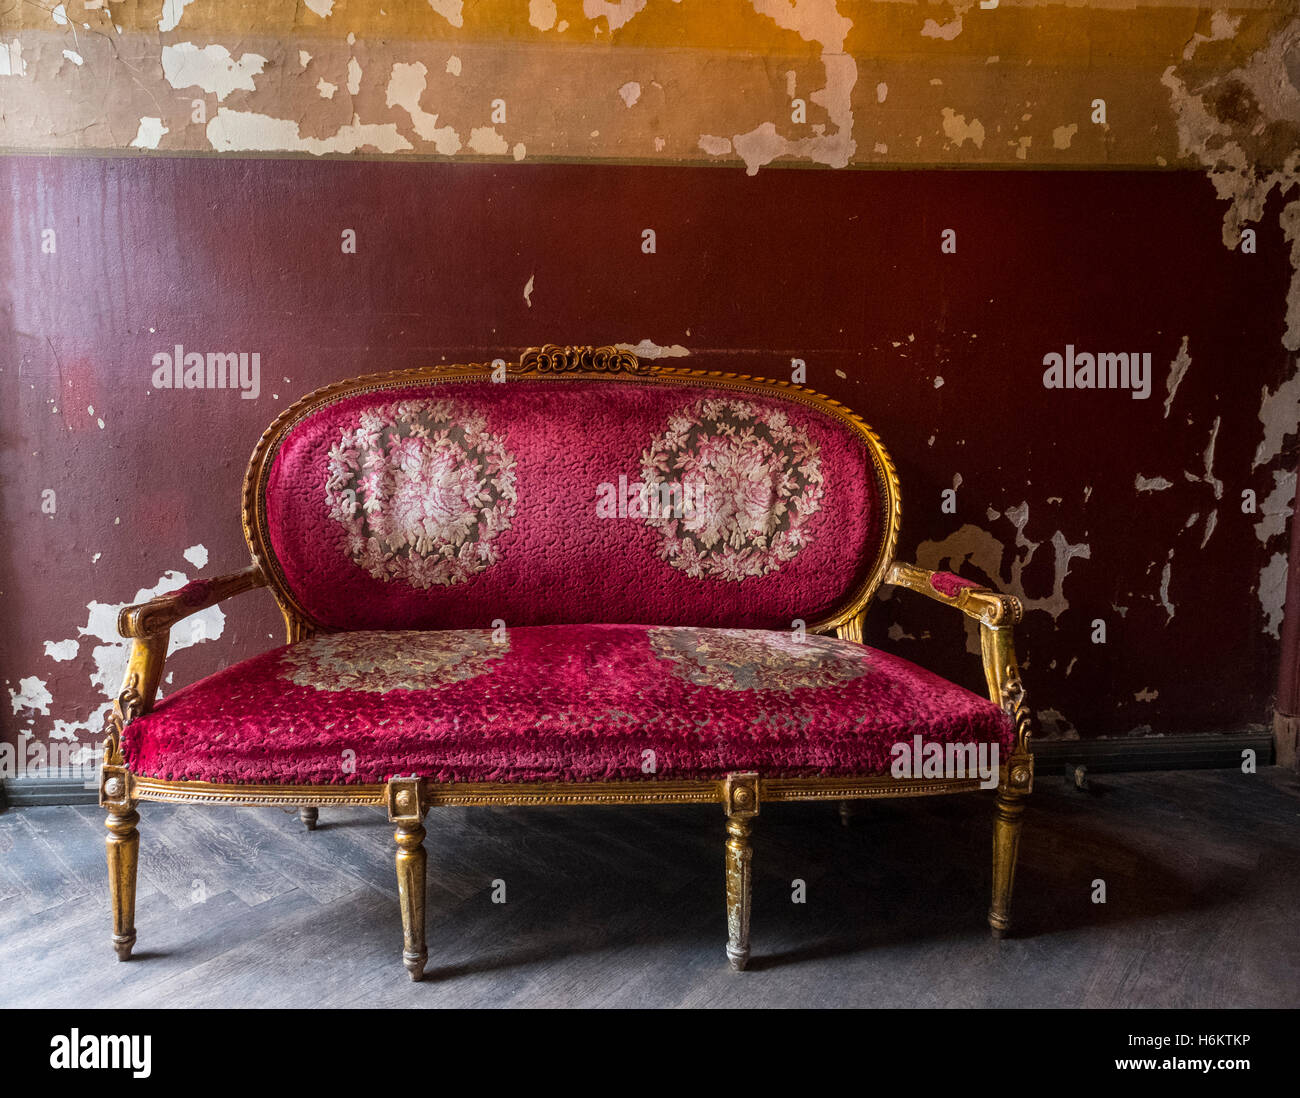 Antigüedades sofá rojo con oro de gilt piernas y decoración ornamental Foto de stock